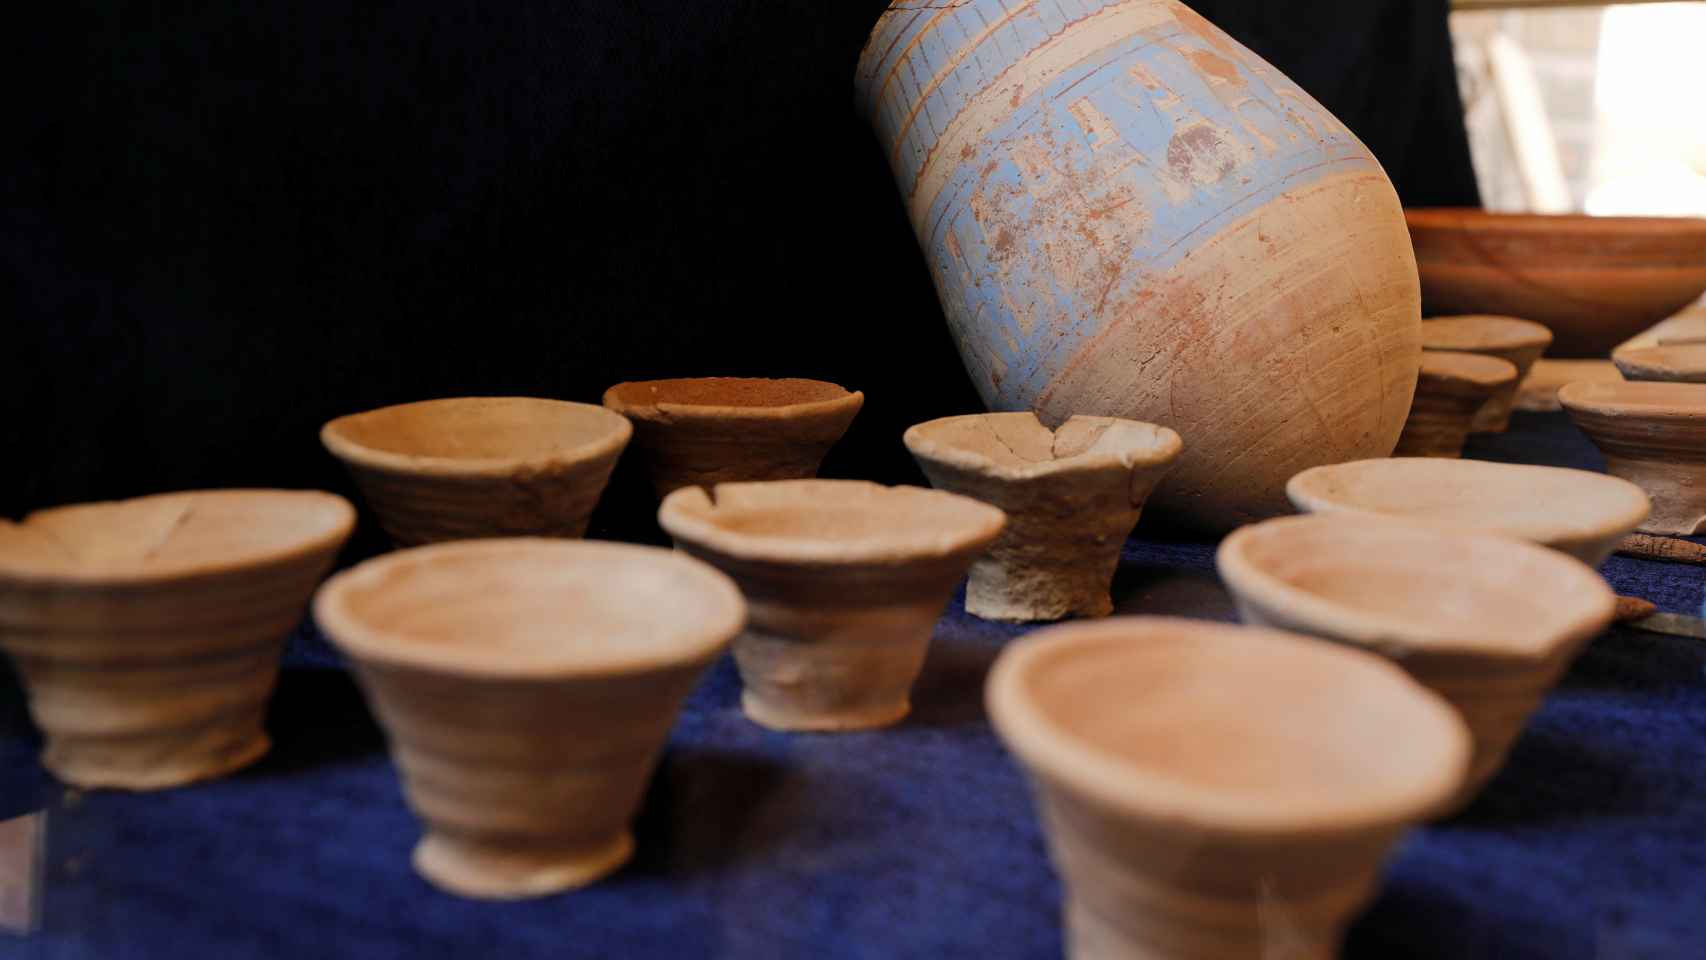 Elementos de cerámica hallados en la nueva zona descubierta.